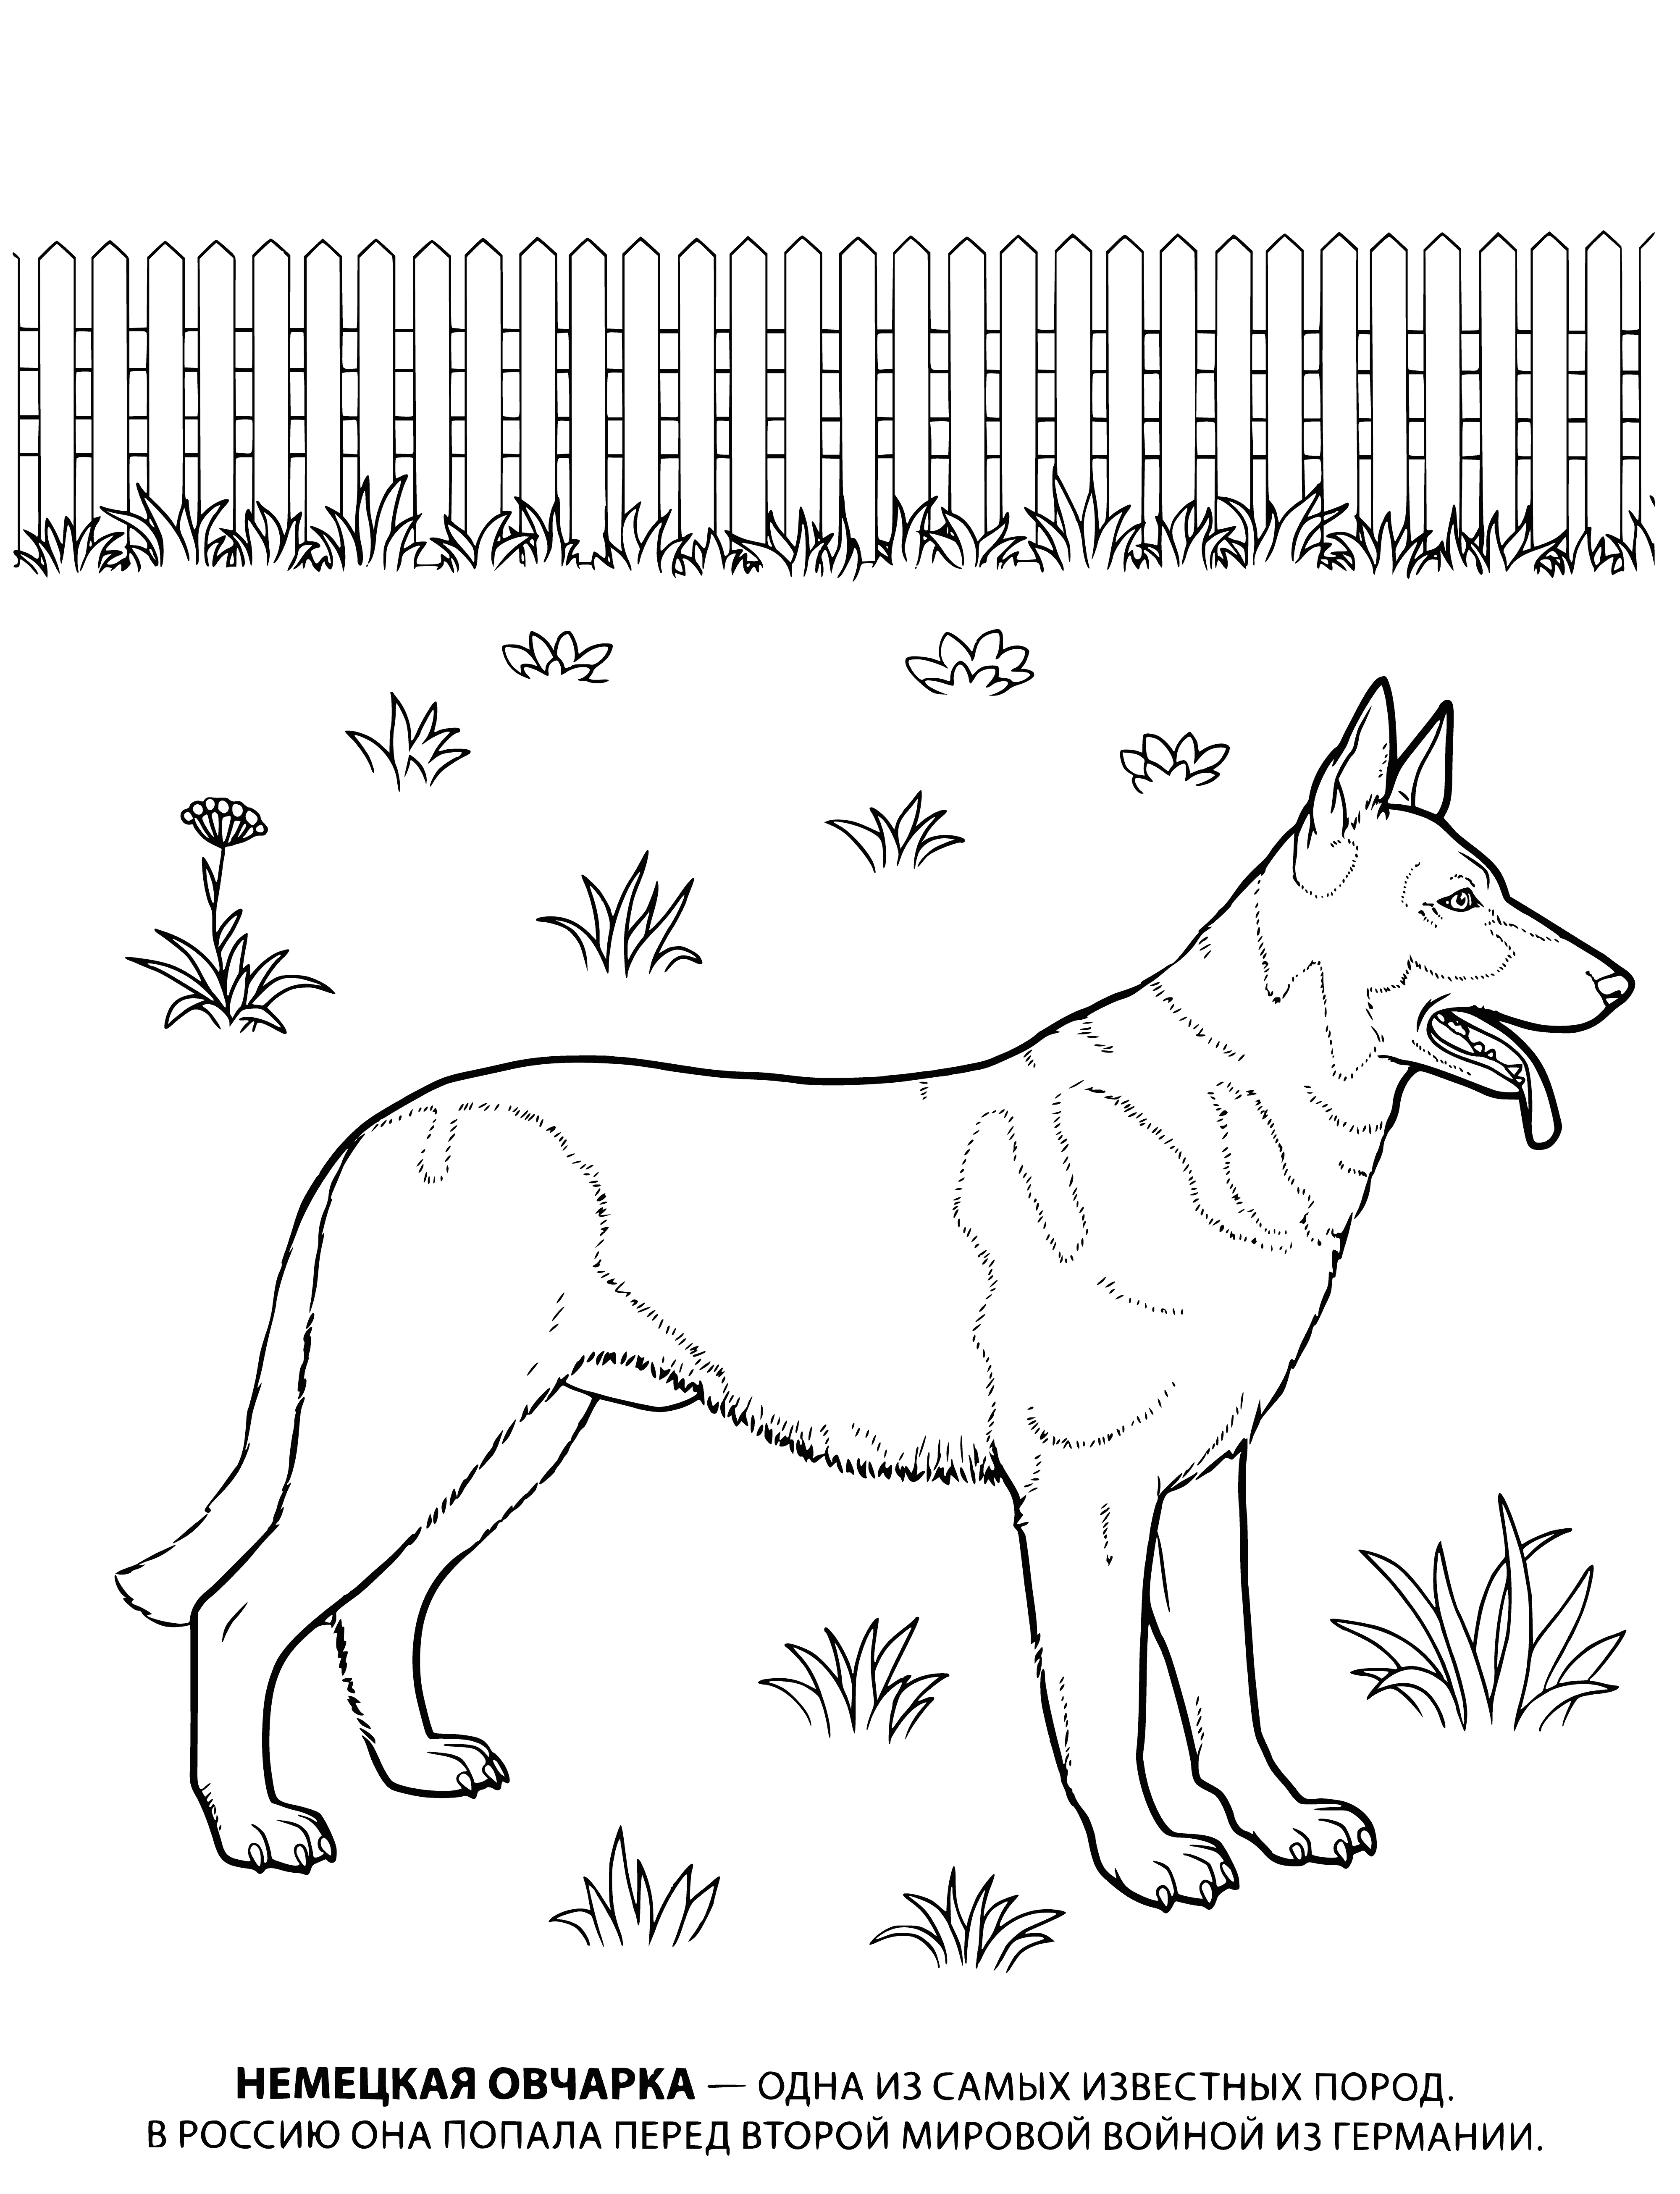 German Shepherd coloring page